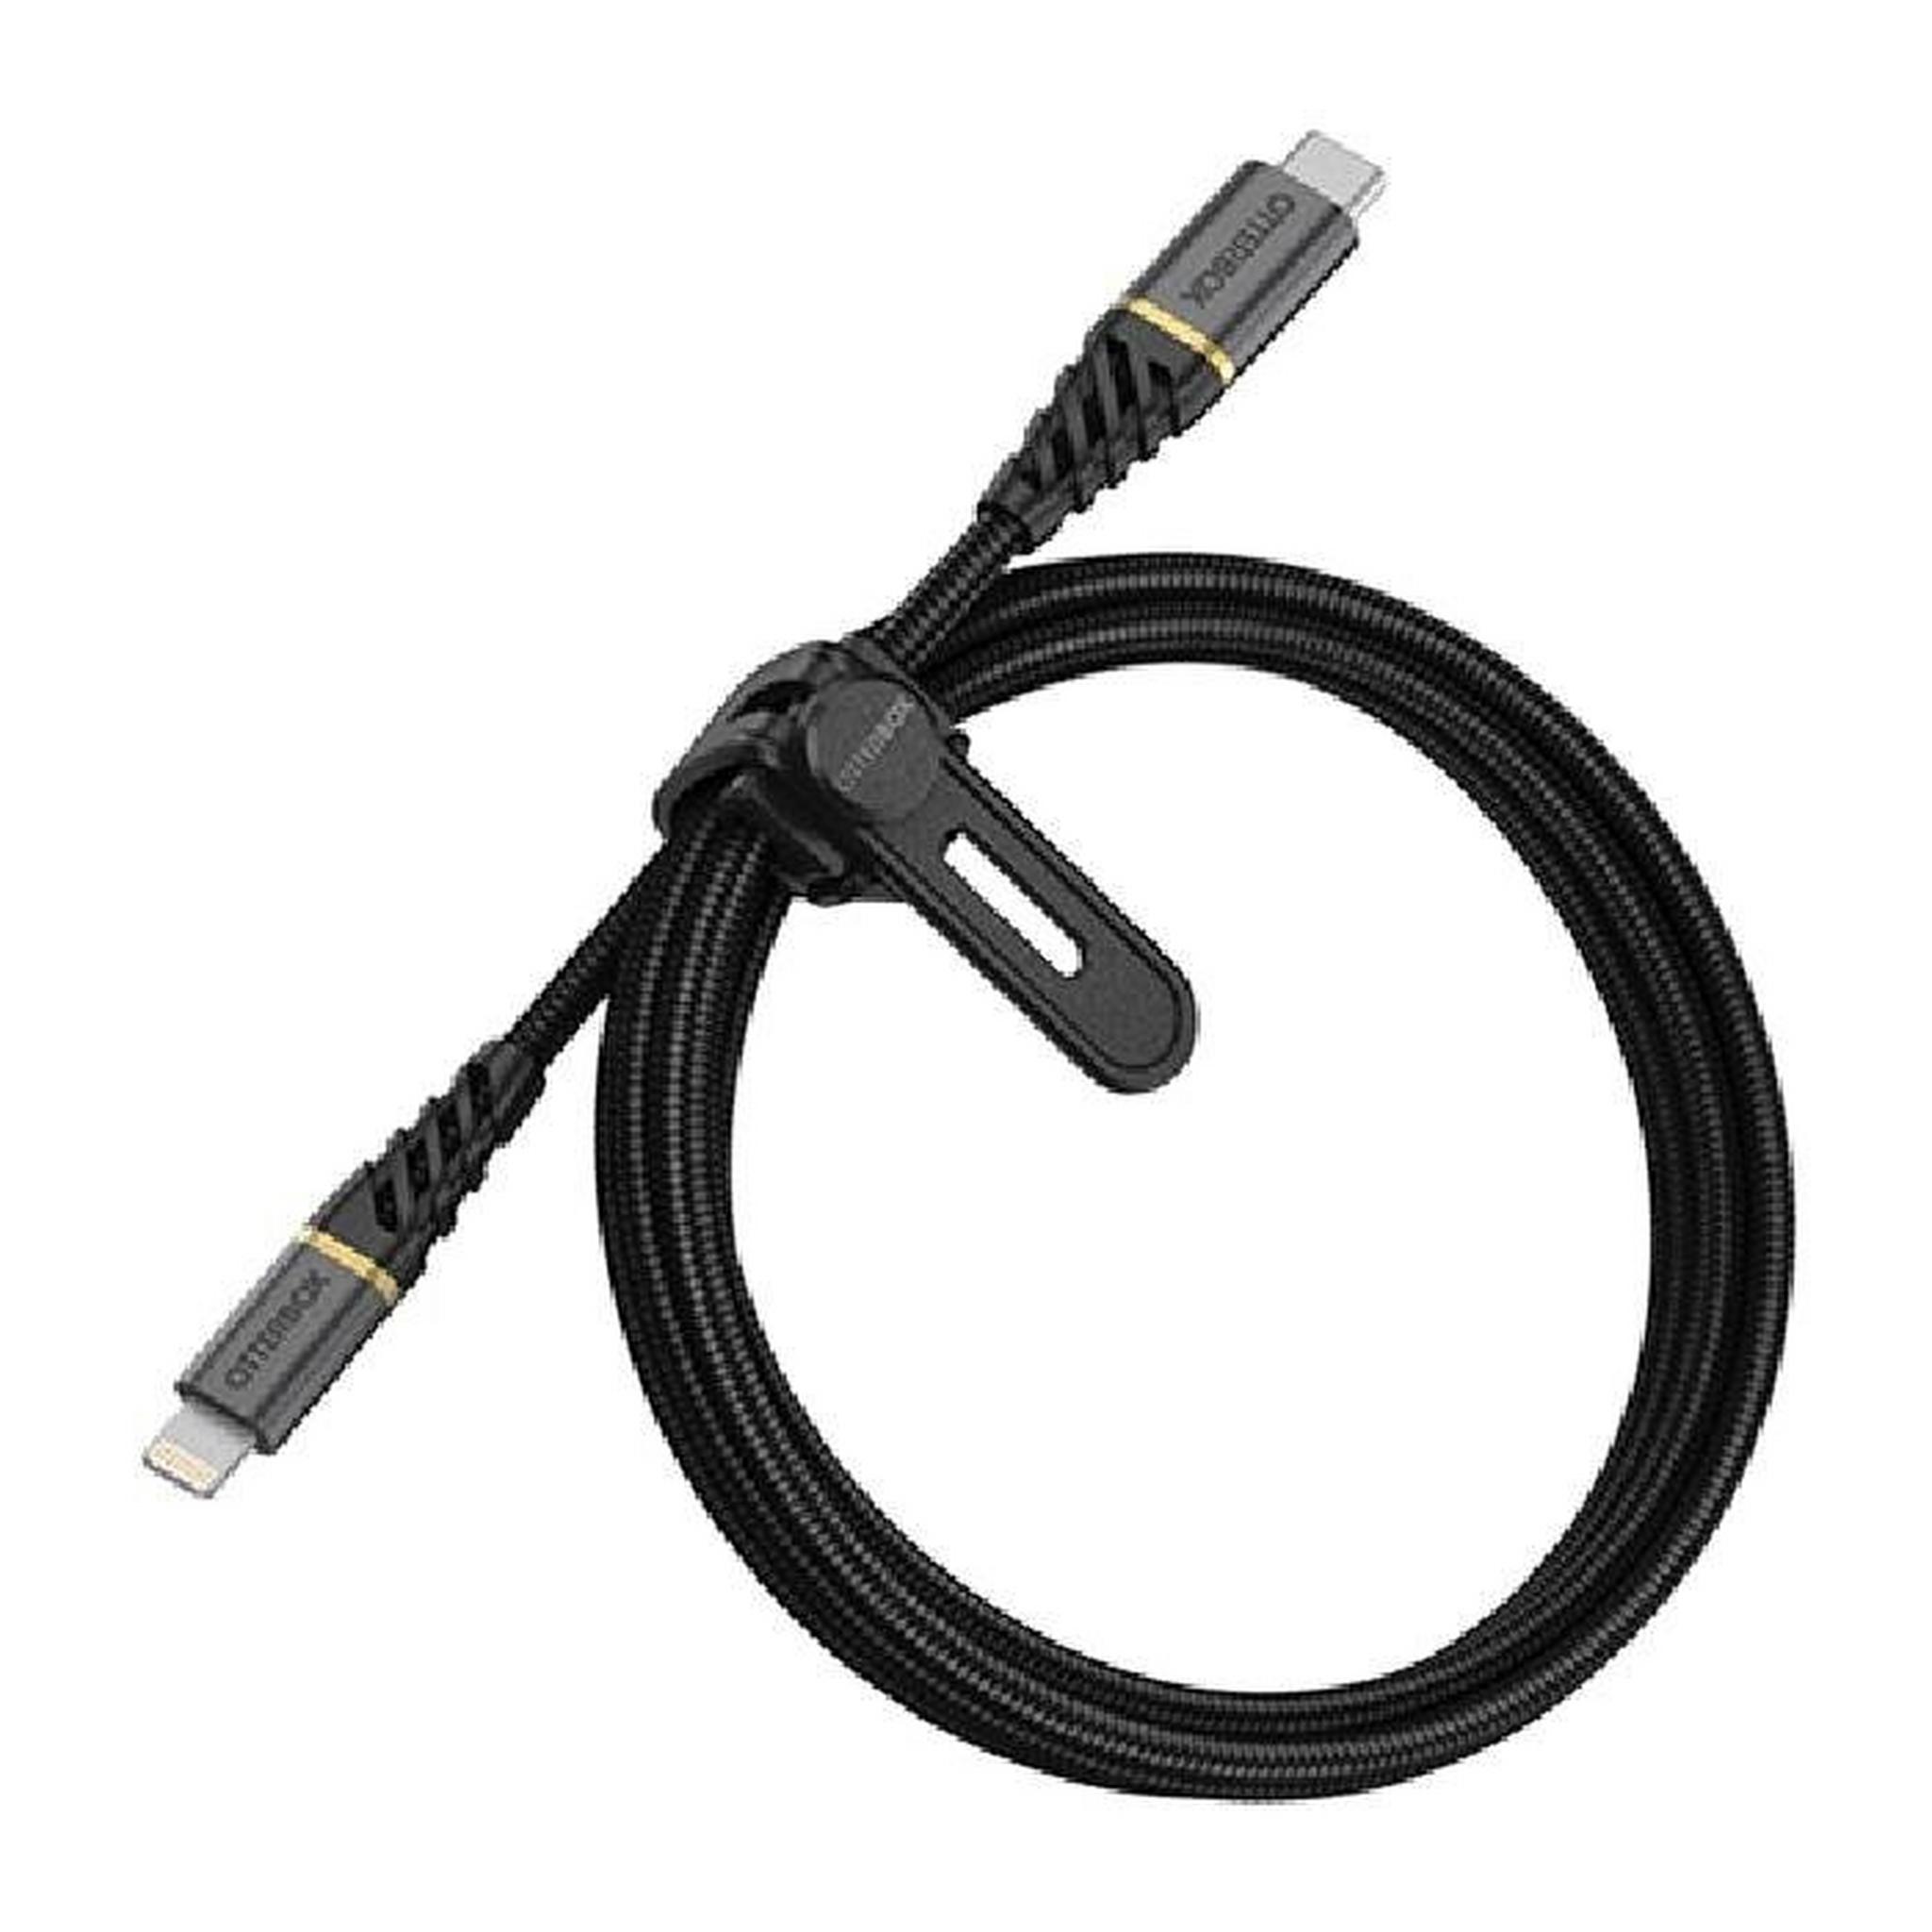 OtterBox Premium USB-C to USB-C Cable 3-Meters (78-52679) - Black